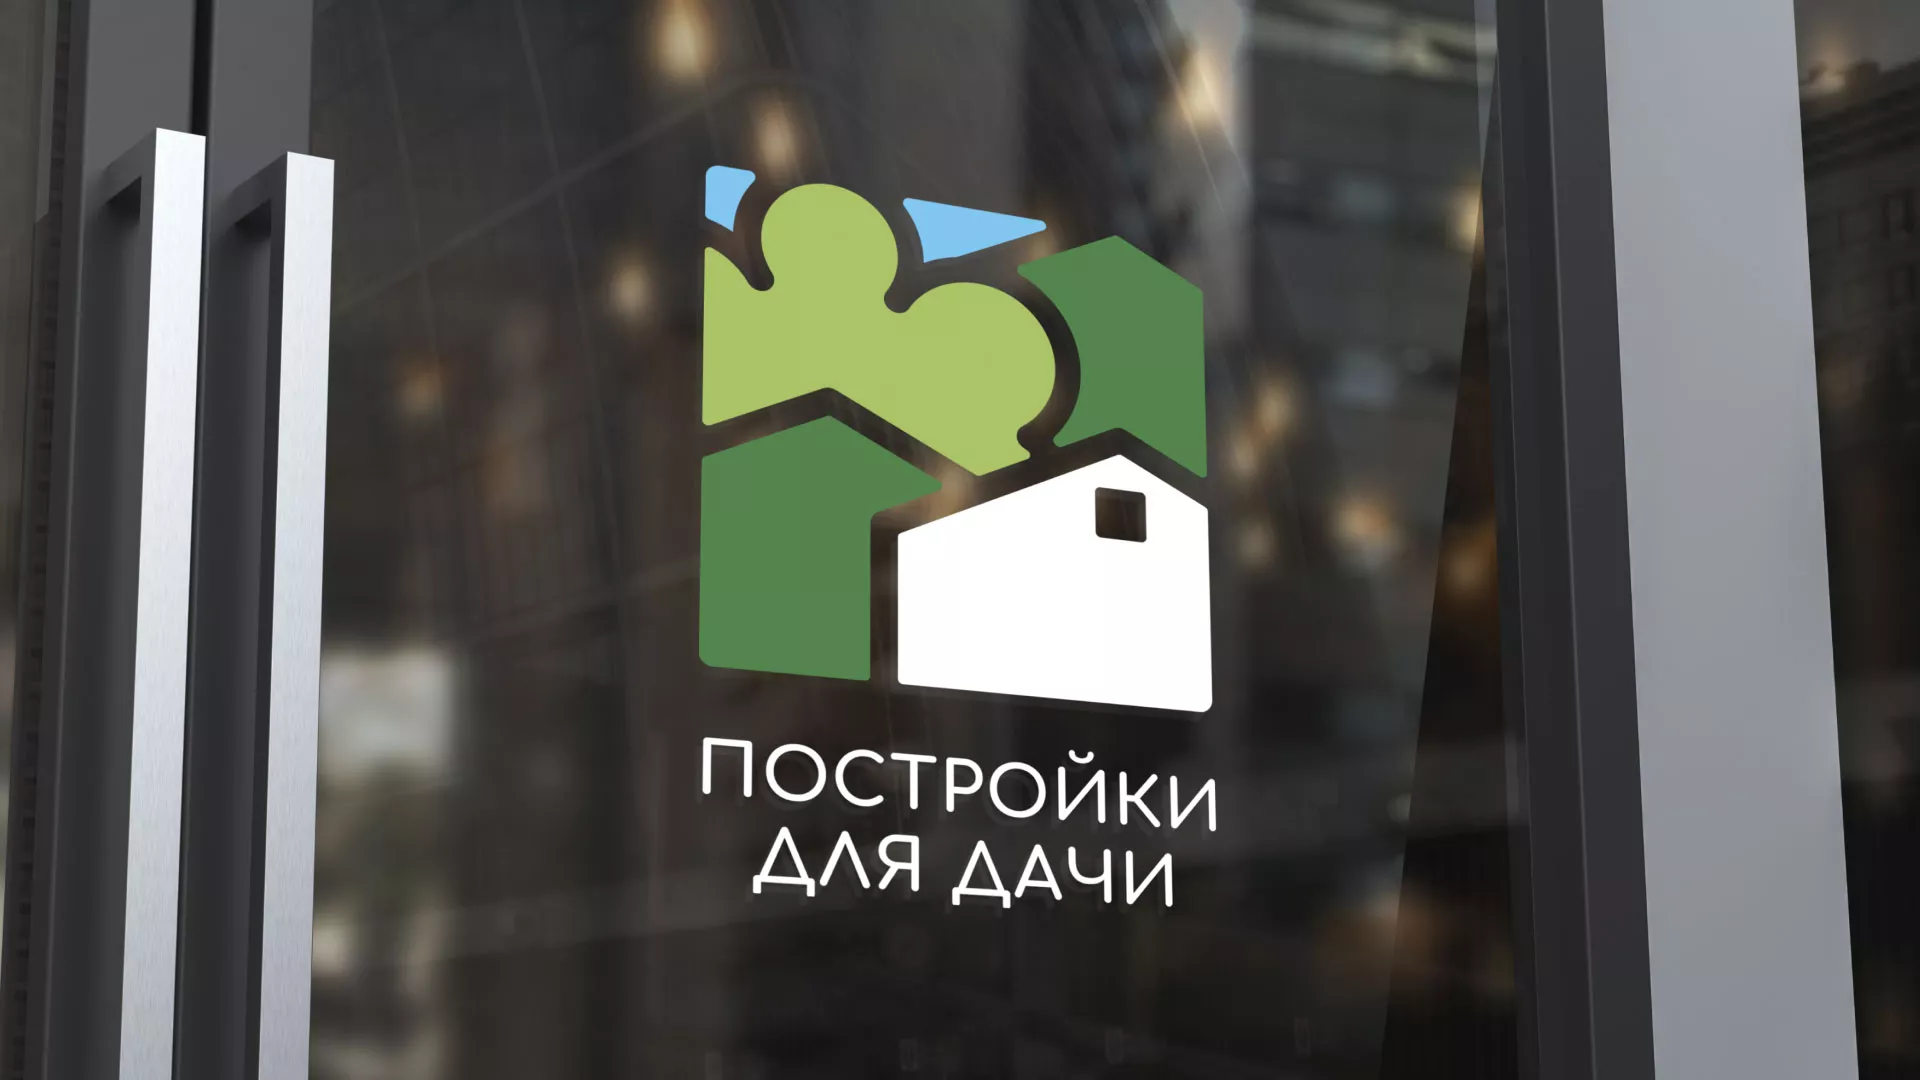 Разработка логотипа в Николаевске-на-Амуре для компании «Постройки для дачи»